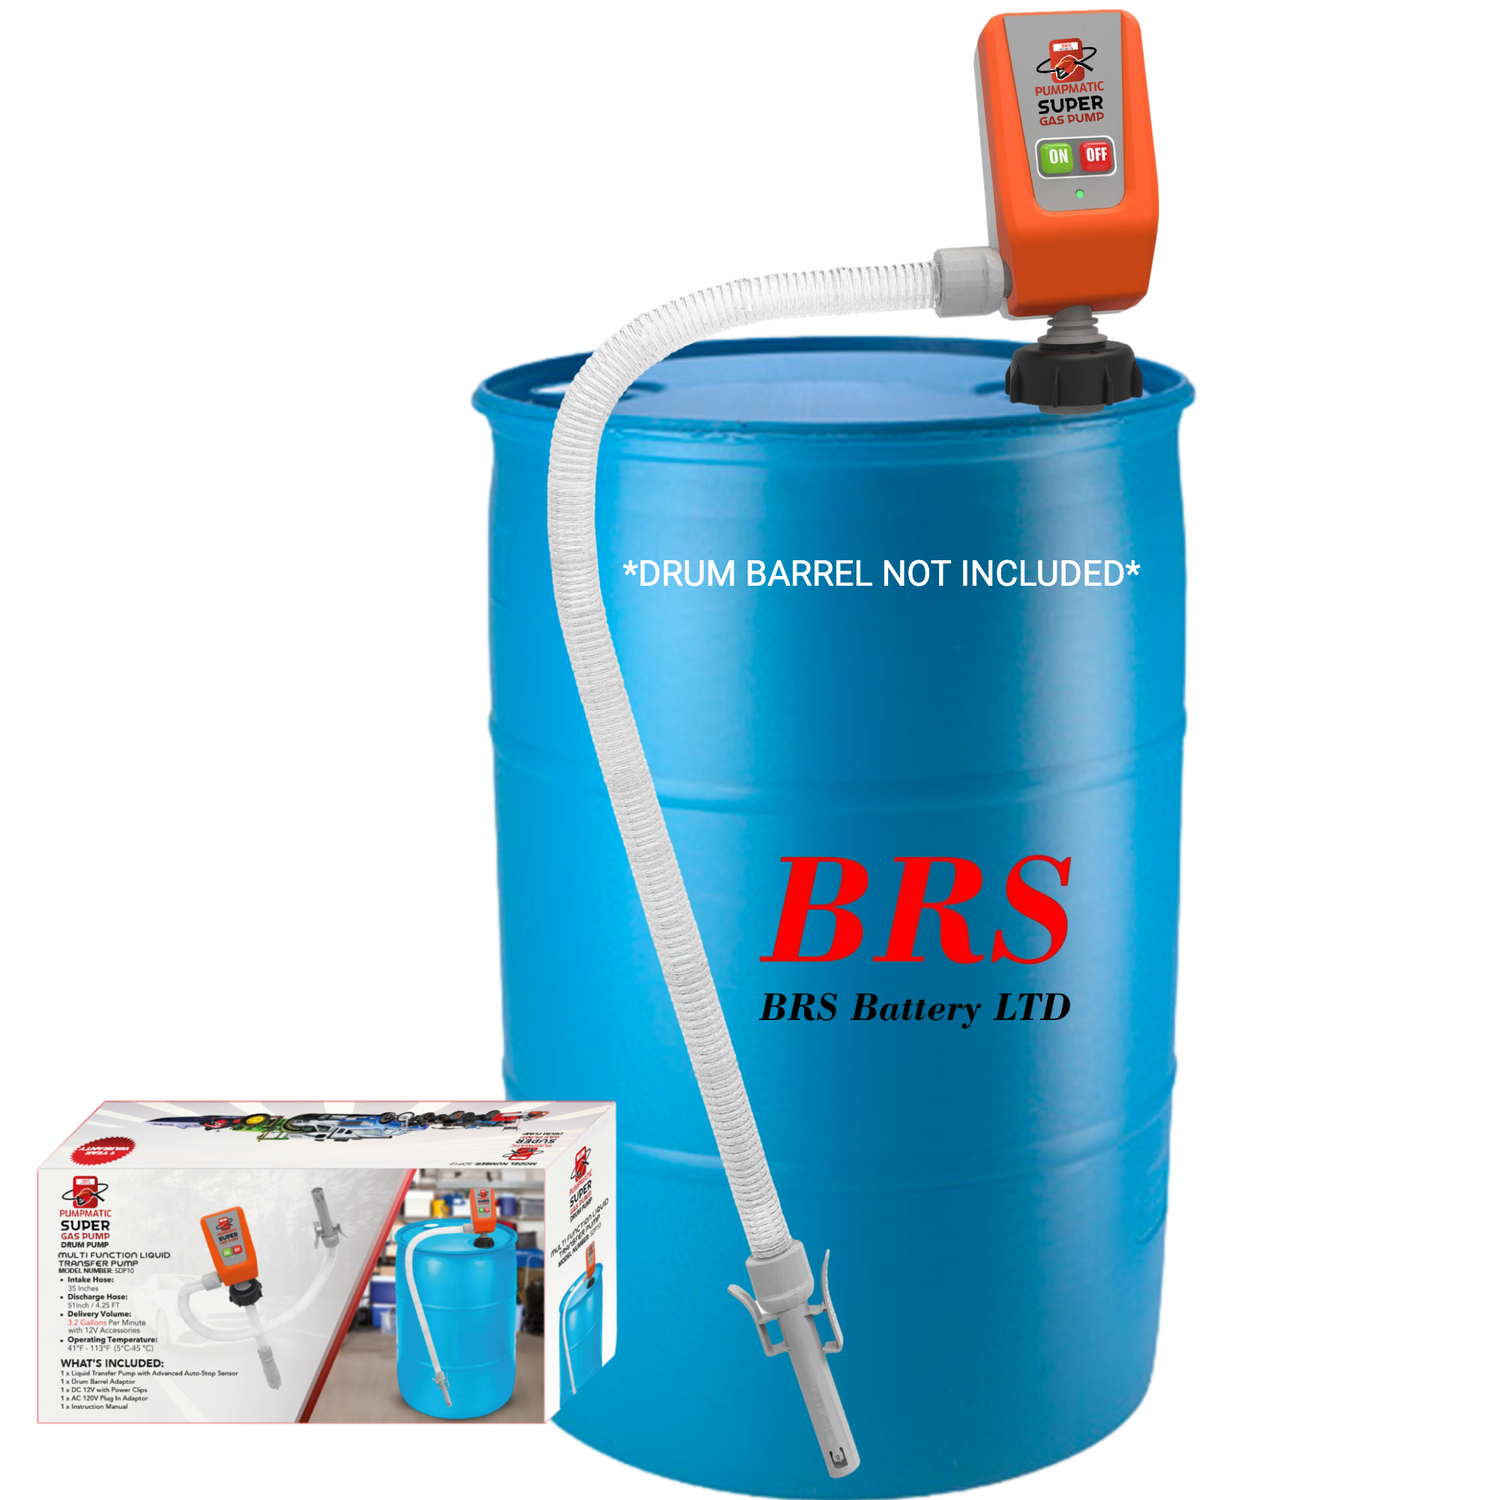 45 Gallon Drum Barrel Pump - Pumpmatic Super Drum Pump - BRS Super Battery